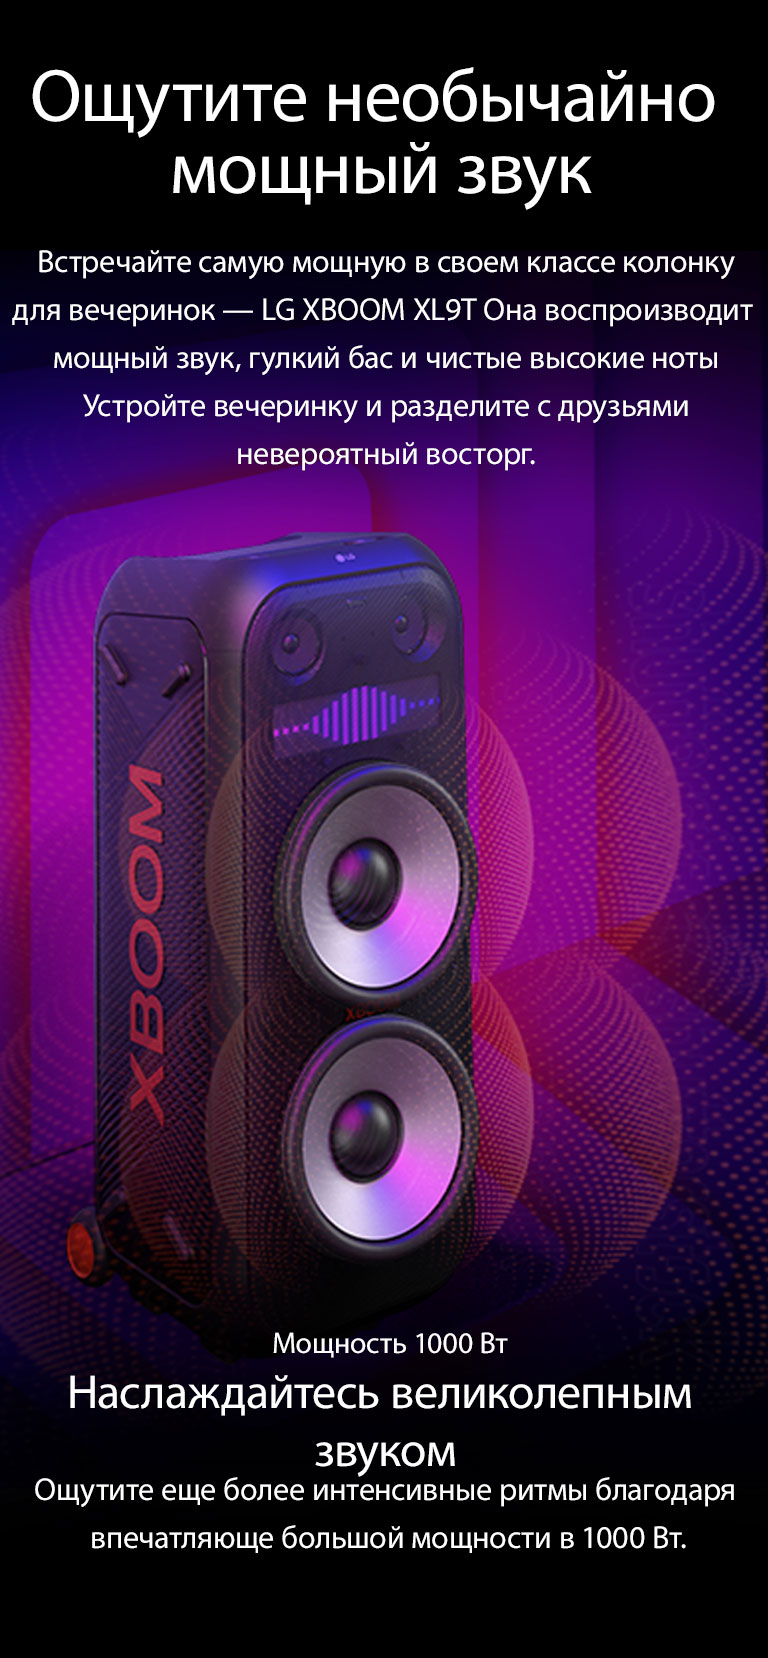 LG XBOOM XL9T расположена в бесконечном пространстве. На стене изображены квадратные звуковые графики. В центре колонки установлены 8-дюймовые огромные низкочастотные динамики, чтобы подчеркнуть ее 1000-ваттный мощный звук. Из низкочастотного динамика выходят звуковые волны. 